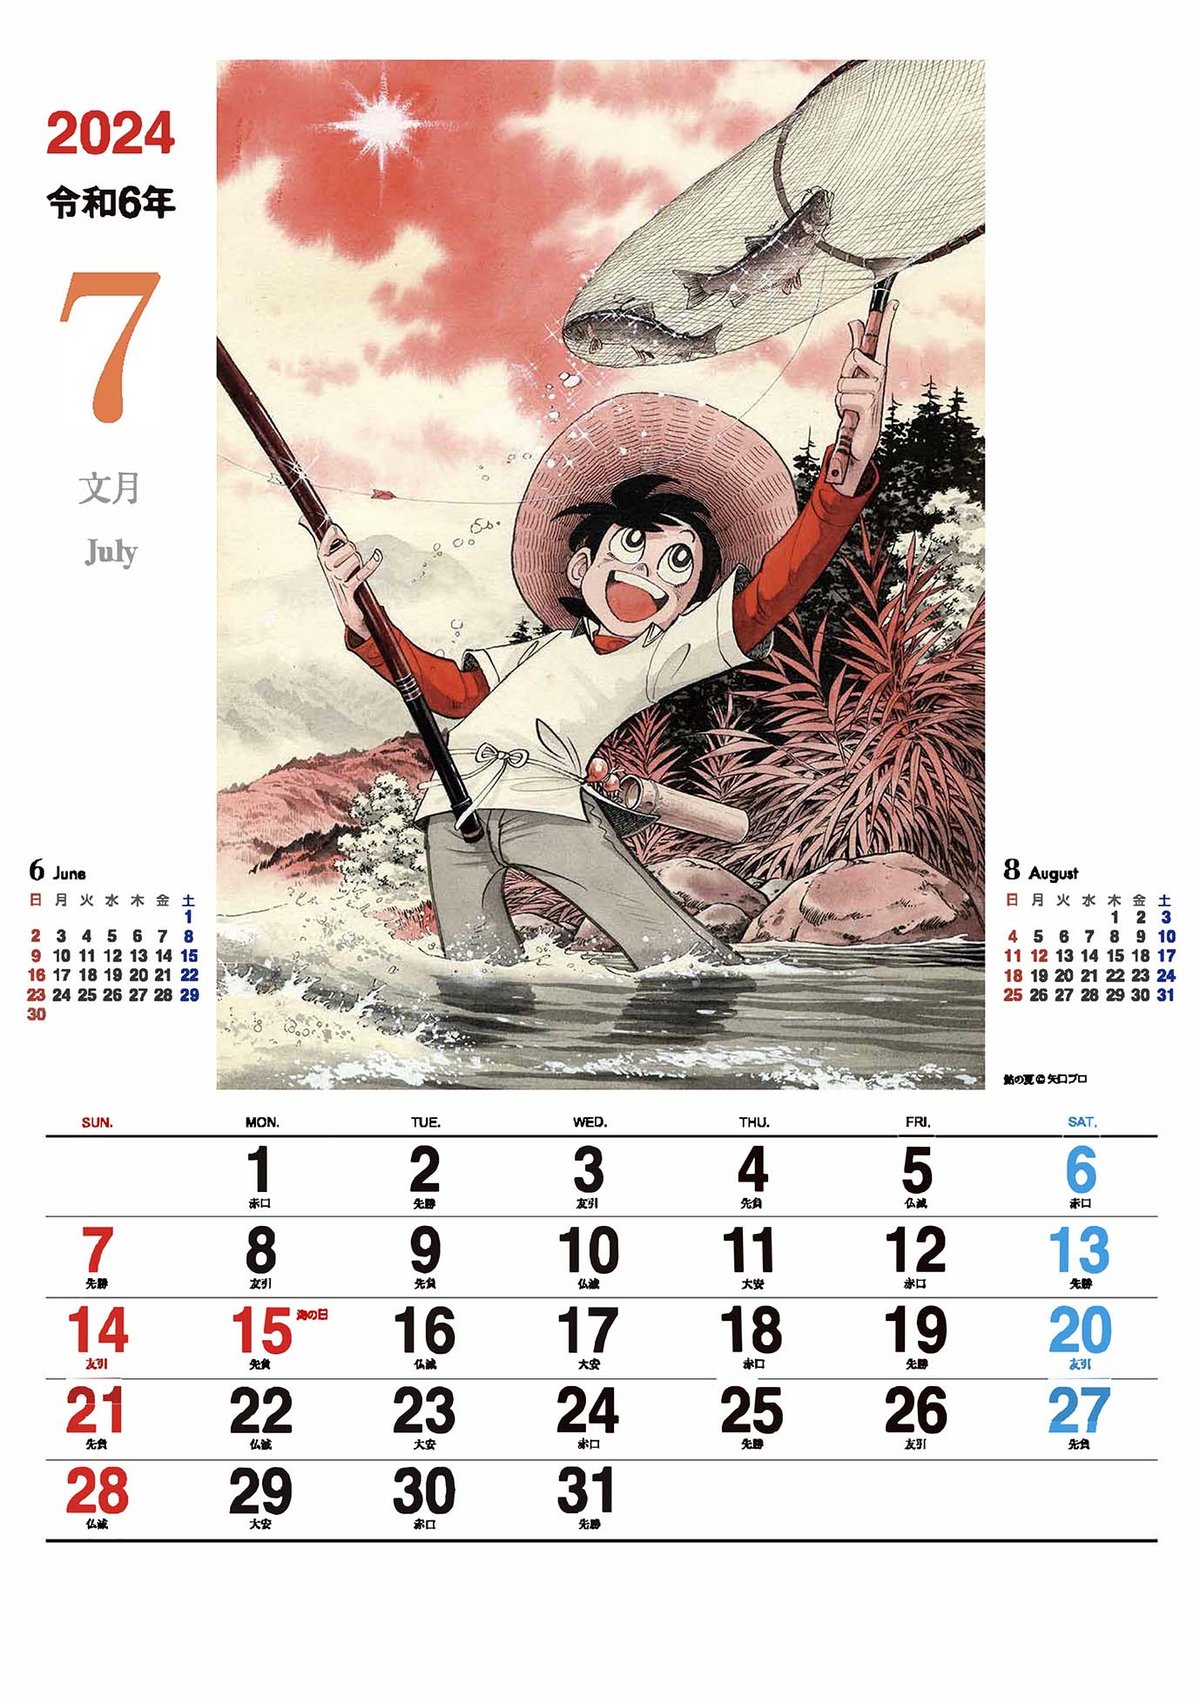 ➀矢口高雄 釣りキチ三平 カレンダー 5点セット 堅実な究極の - ポスター